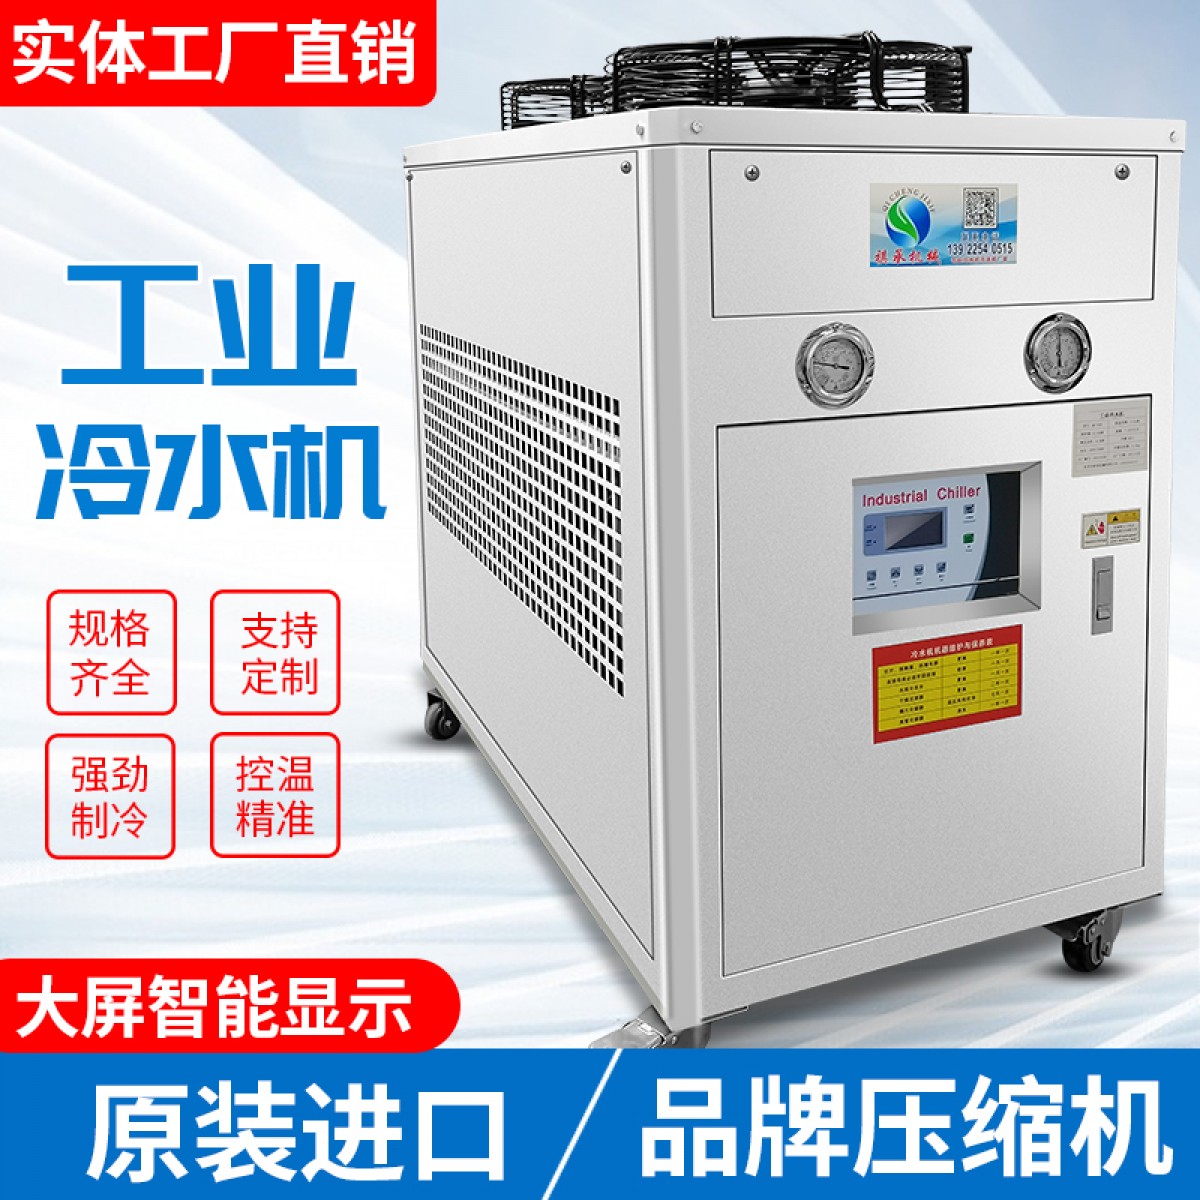 冷水机冷油机模具冷水机注塑冷水机冰水机制冷机设备恒温冷水机